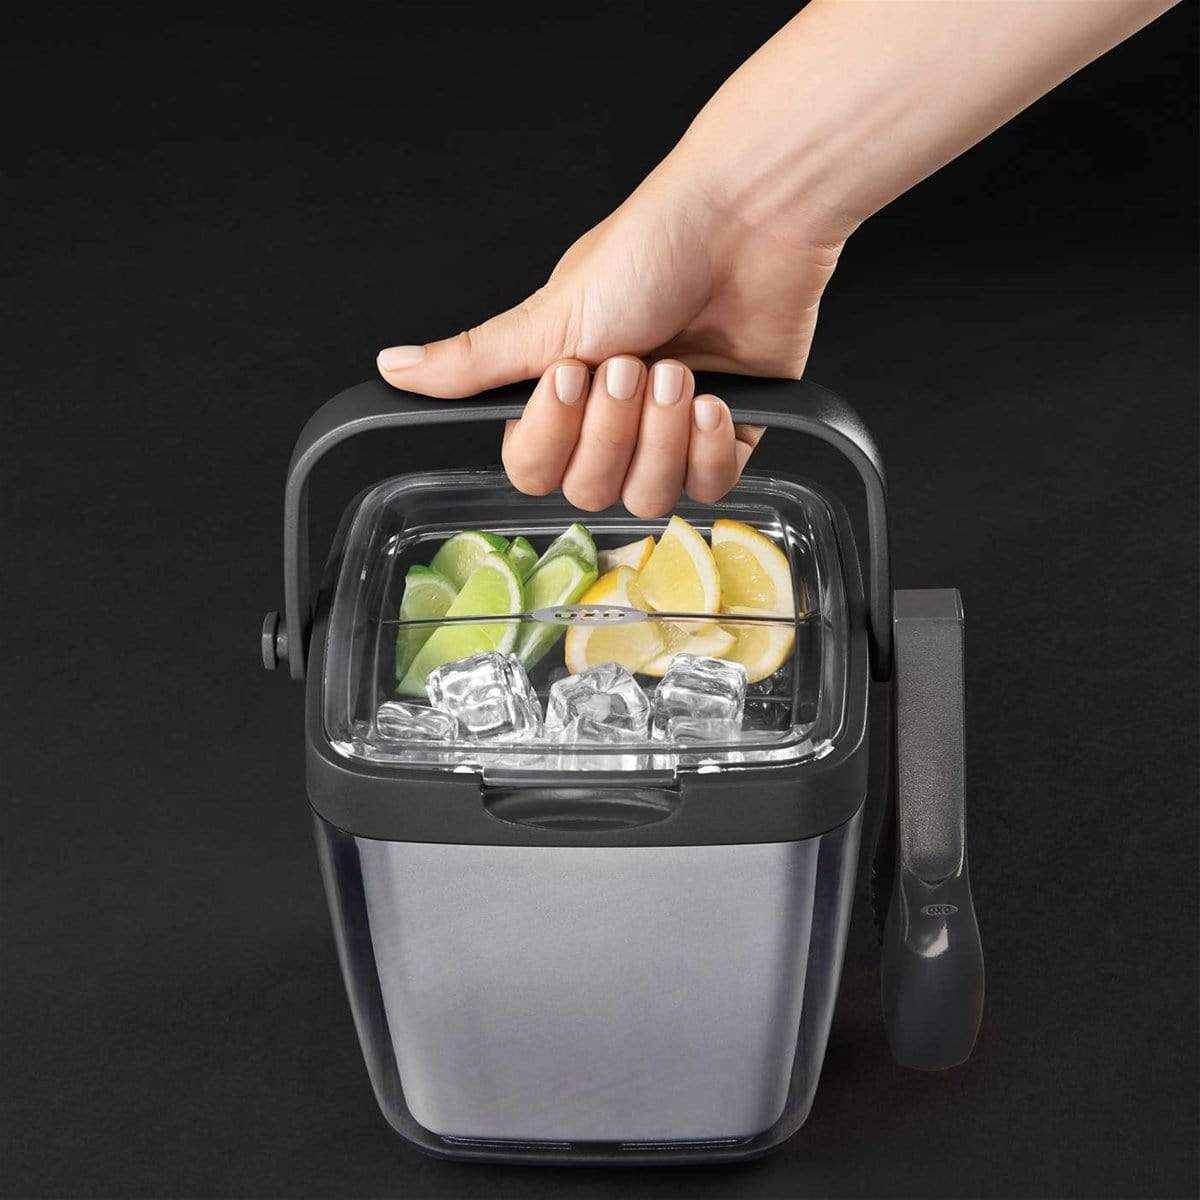 OXO Good Grips Ice Bucket - Kitchen & Company